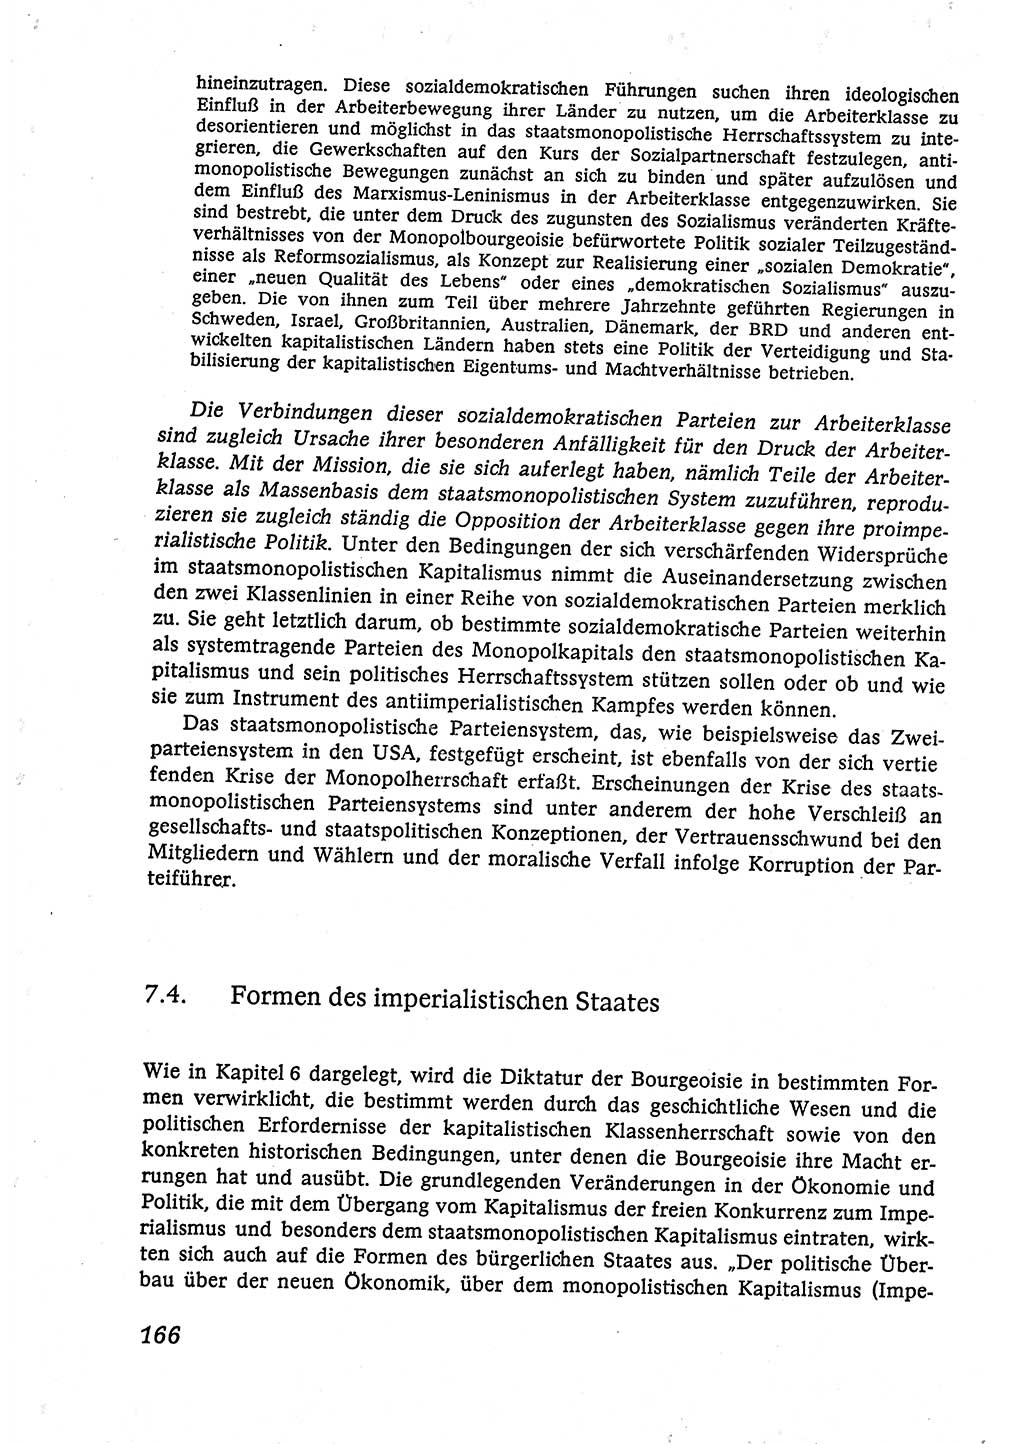 Marxistisch-leninistische (ML) Staats- und Rechtstheorie [Deutsche Demokratische Republik (DDR)], Lehrbuch 1980, Seite 166 (ML St.-R.-Th. DDR Lb. 1980, S. 166)